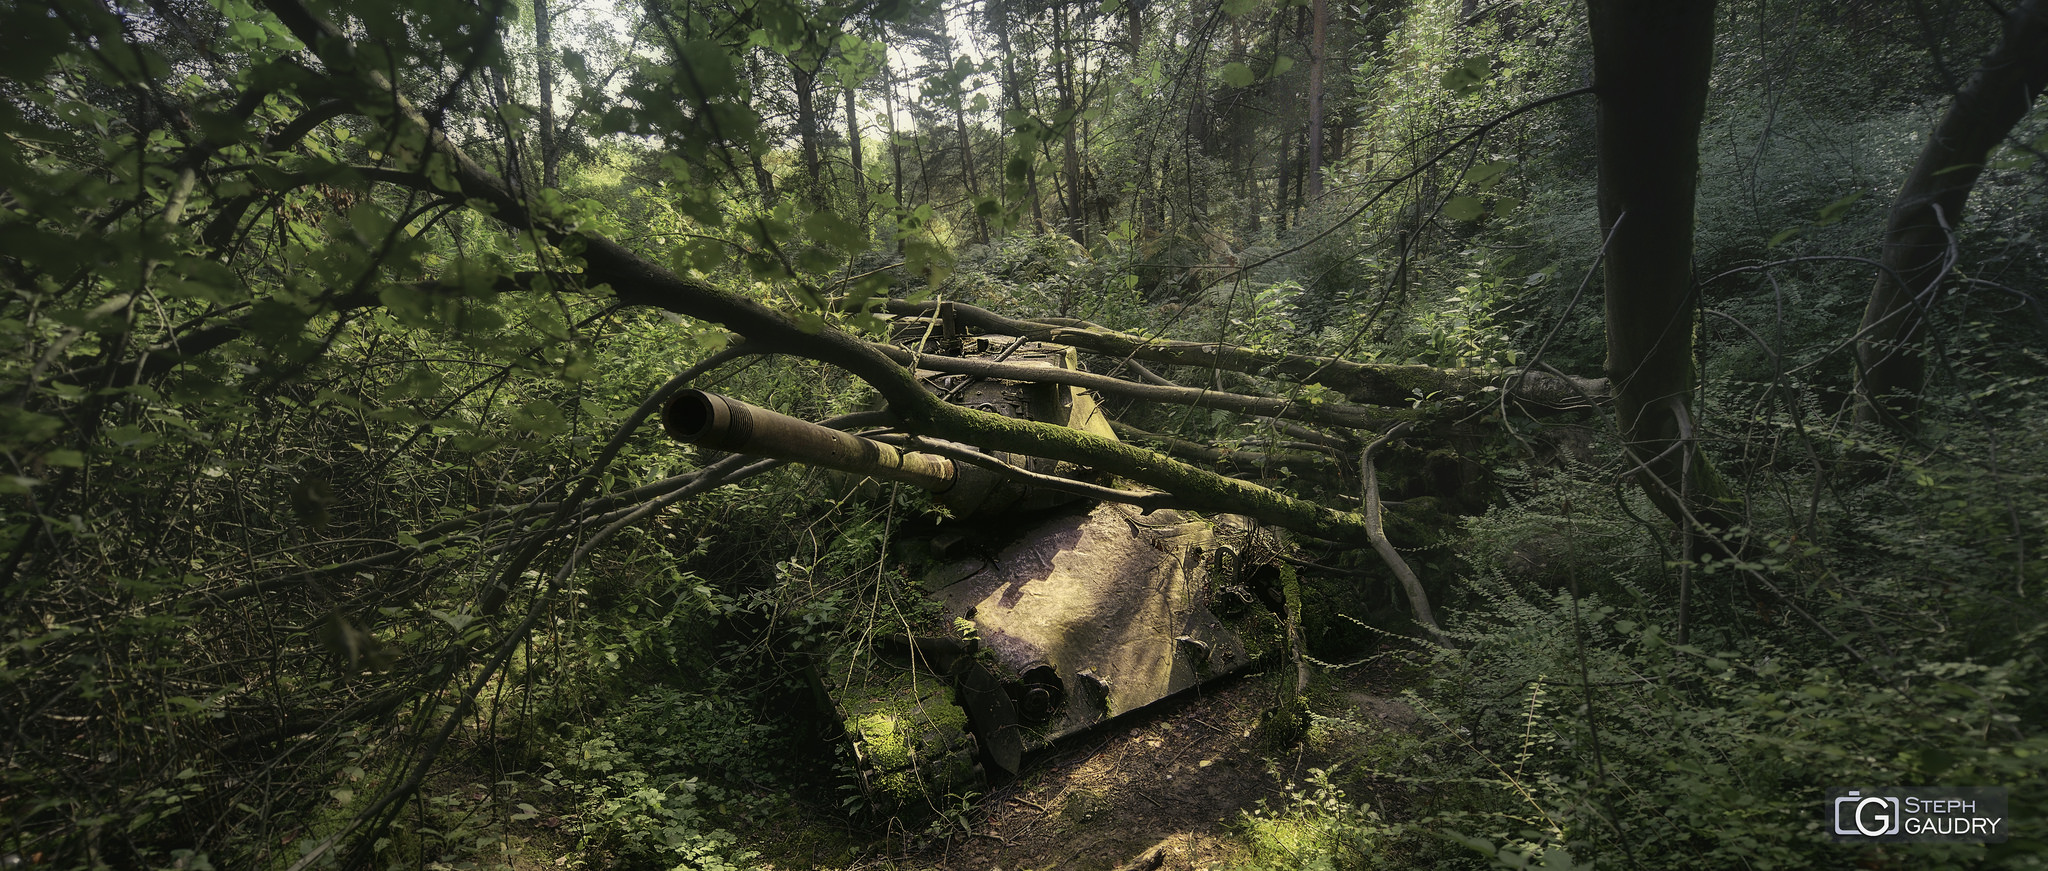 Militaire / Tank abandonné dans la forêt